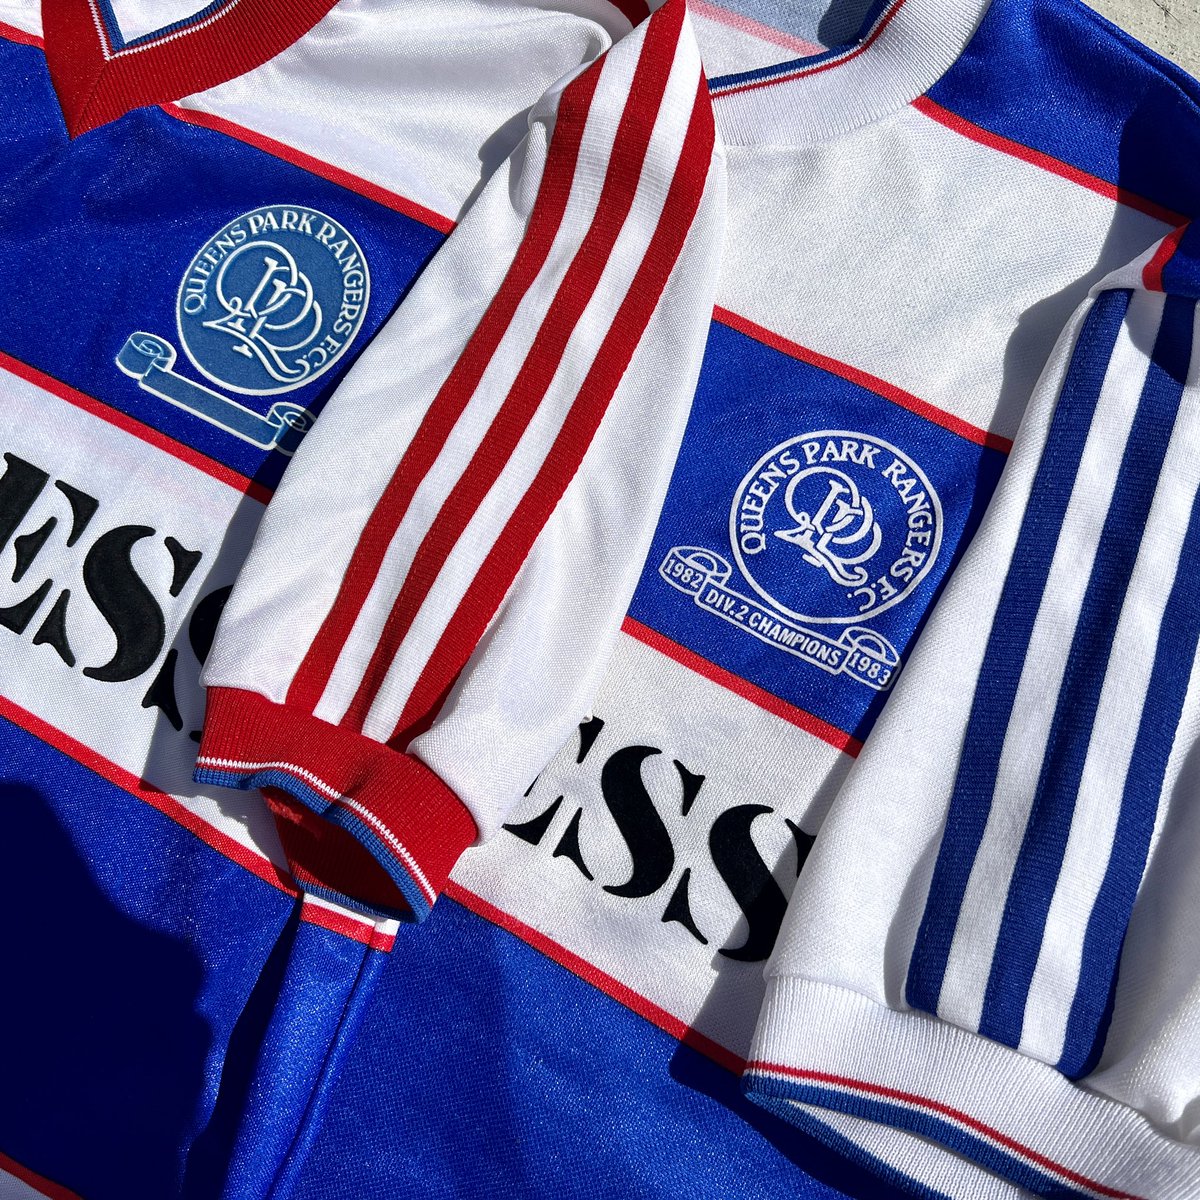 Queens Park Rangers 1983-84 Away Kit